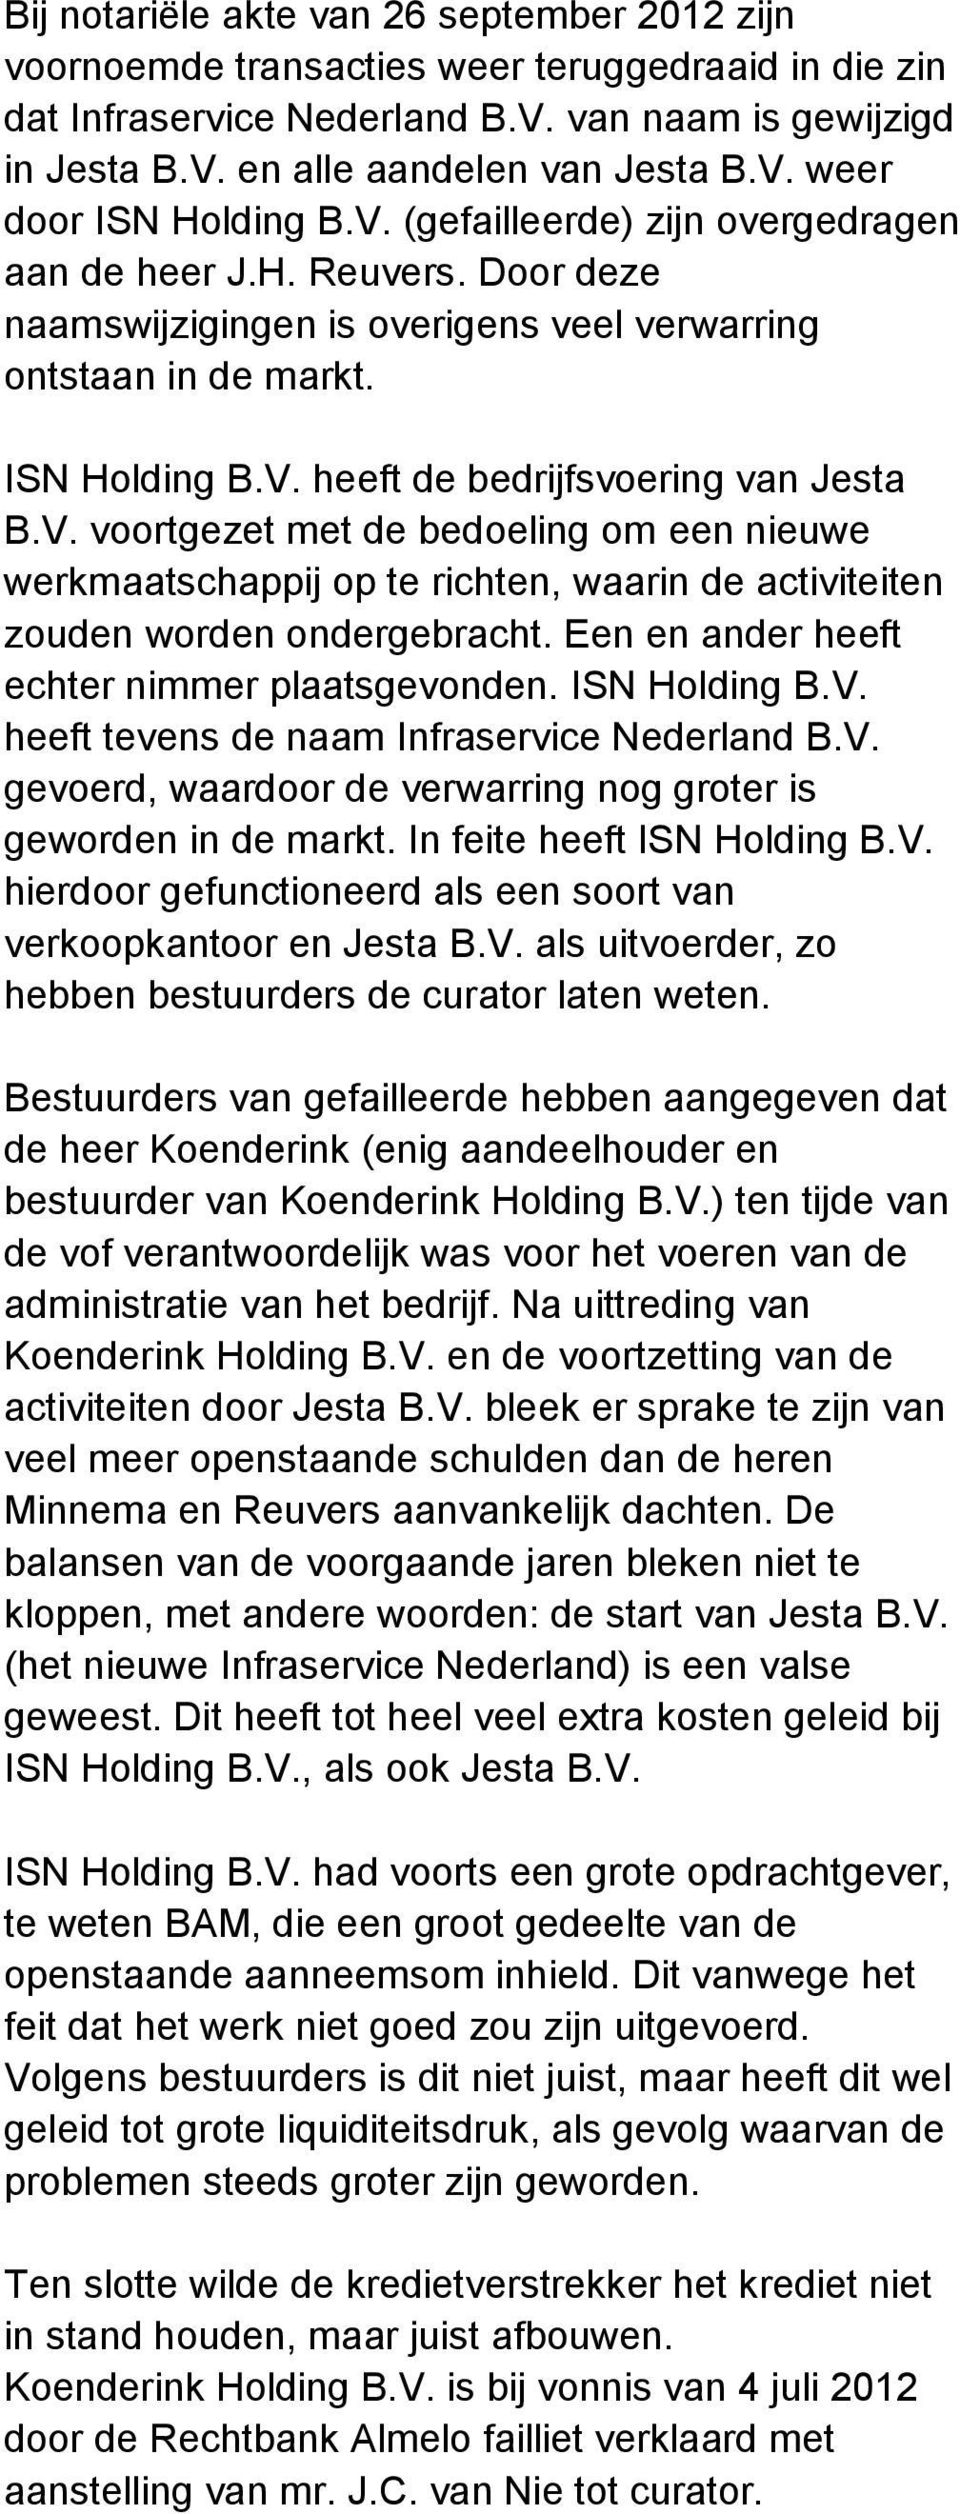 Een en ander heeft echter nimmer plaatsgevonden. ISN Holding B.V. heeft tevens de naam Infraservice Nederland B.V. gevoerd, waardoor de verwarring nog groter is geworden in de markt.